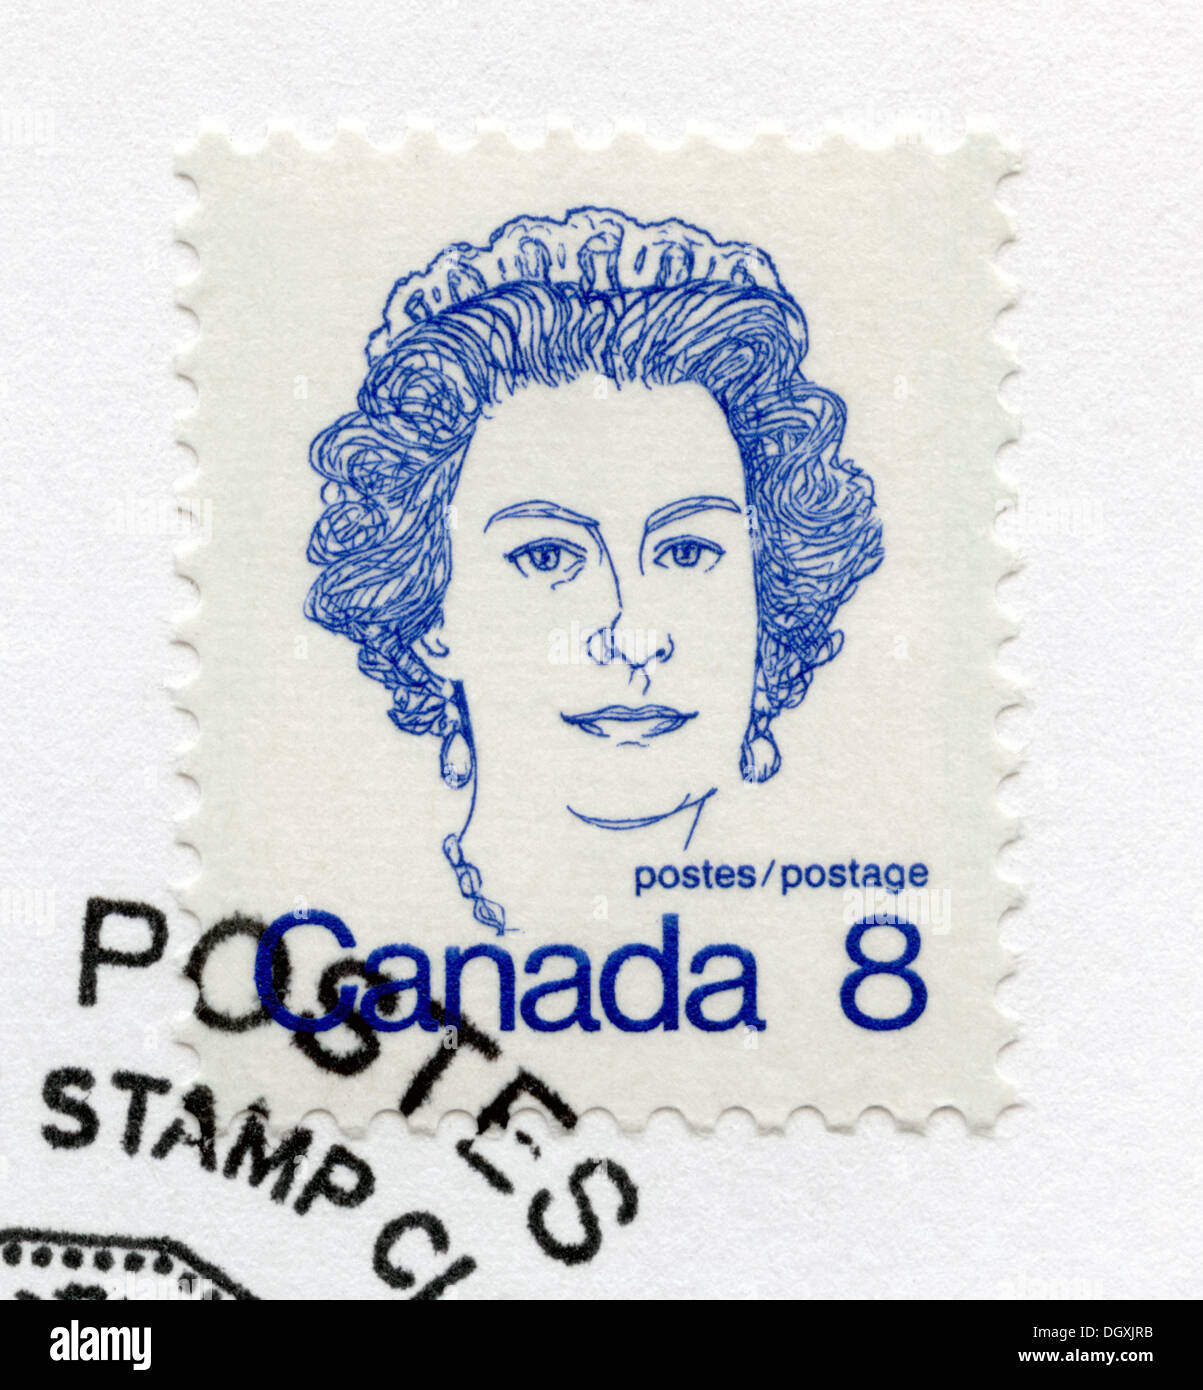 Des timbres du Canada représentant la reine Elizabeth II Banque D'Images